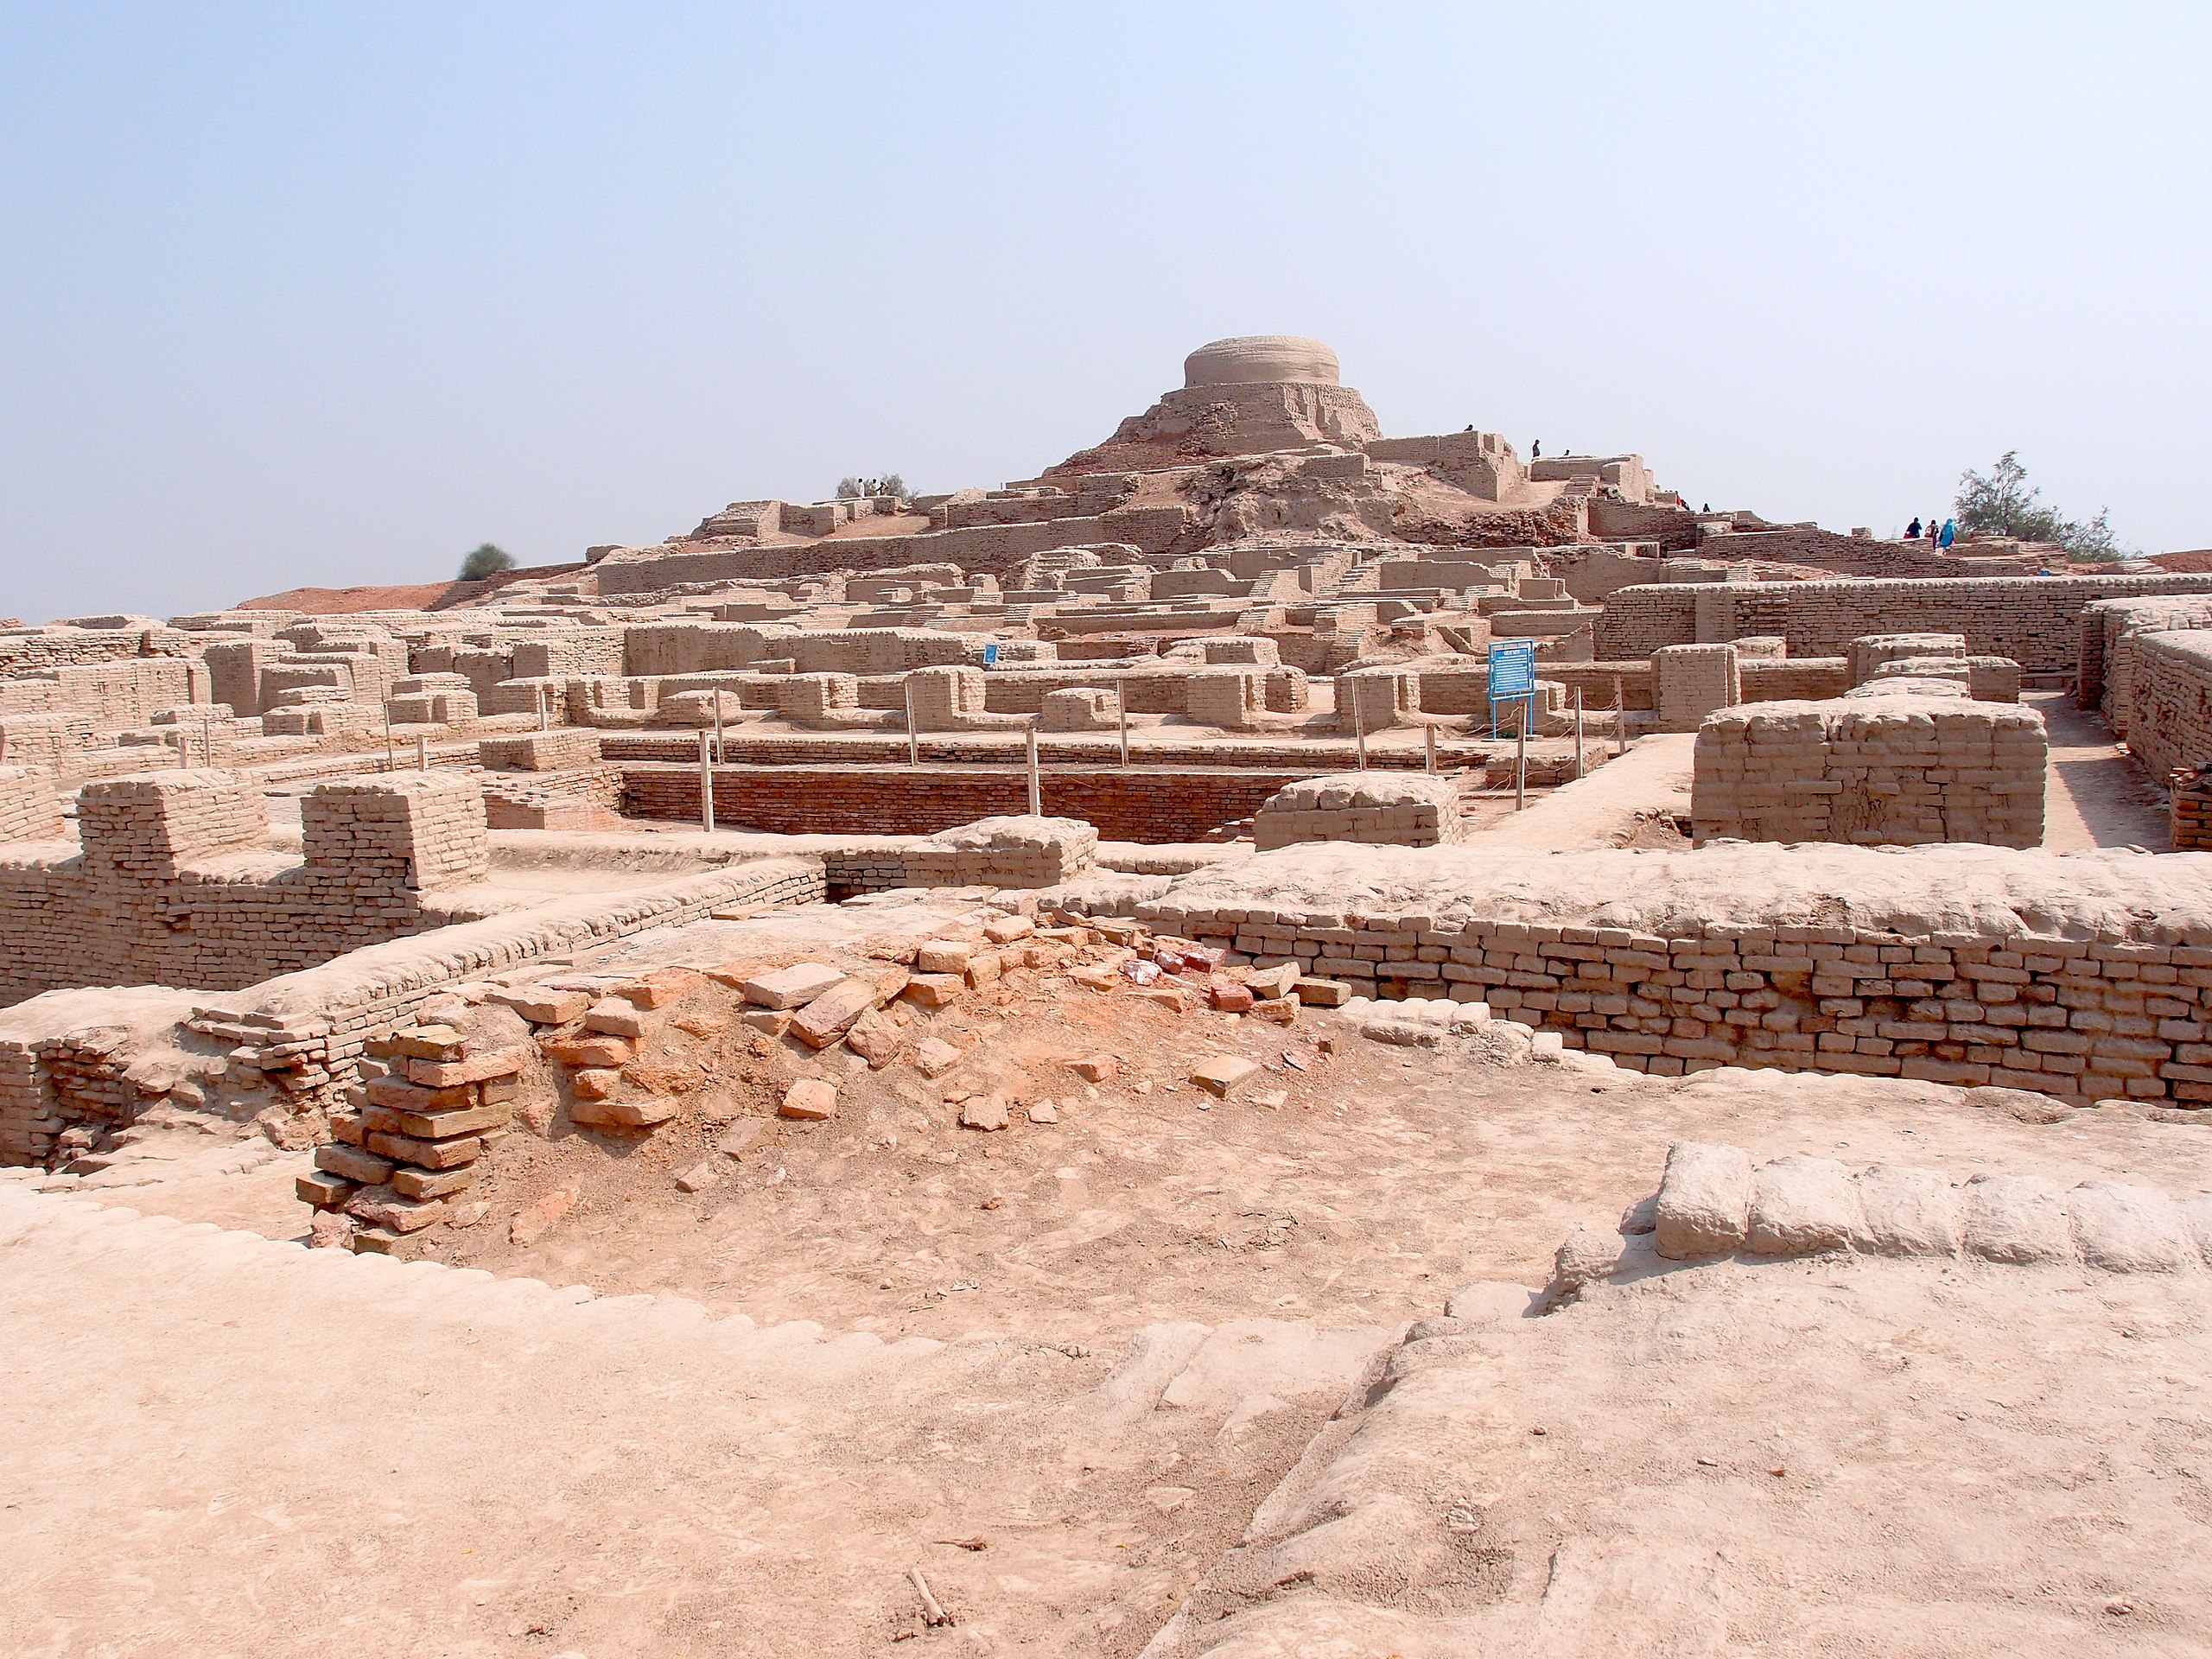 Who Lived in Mohenjo Daro?